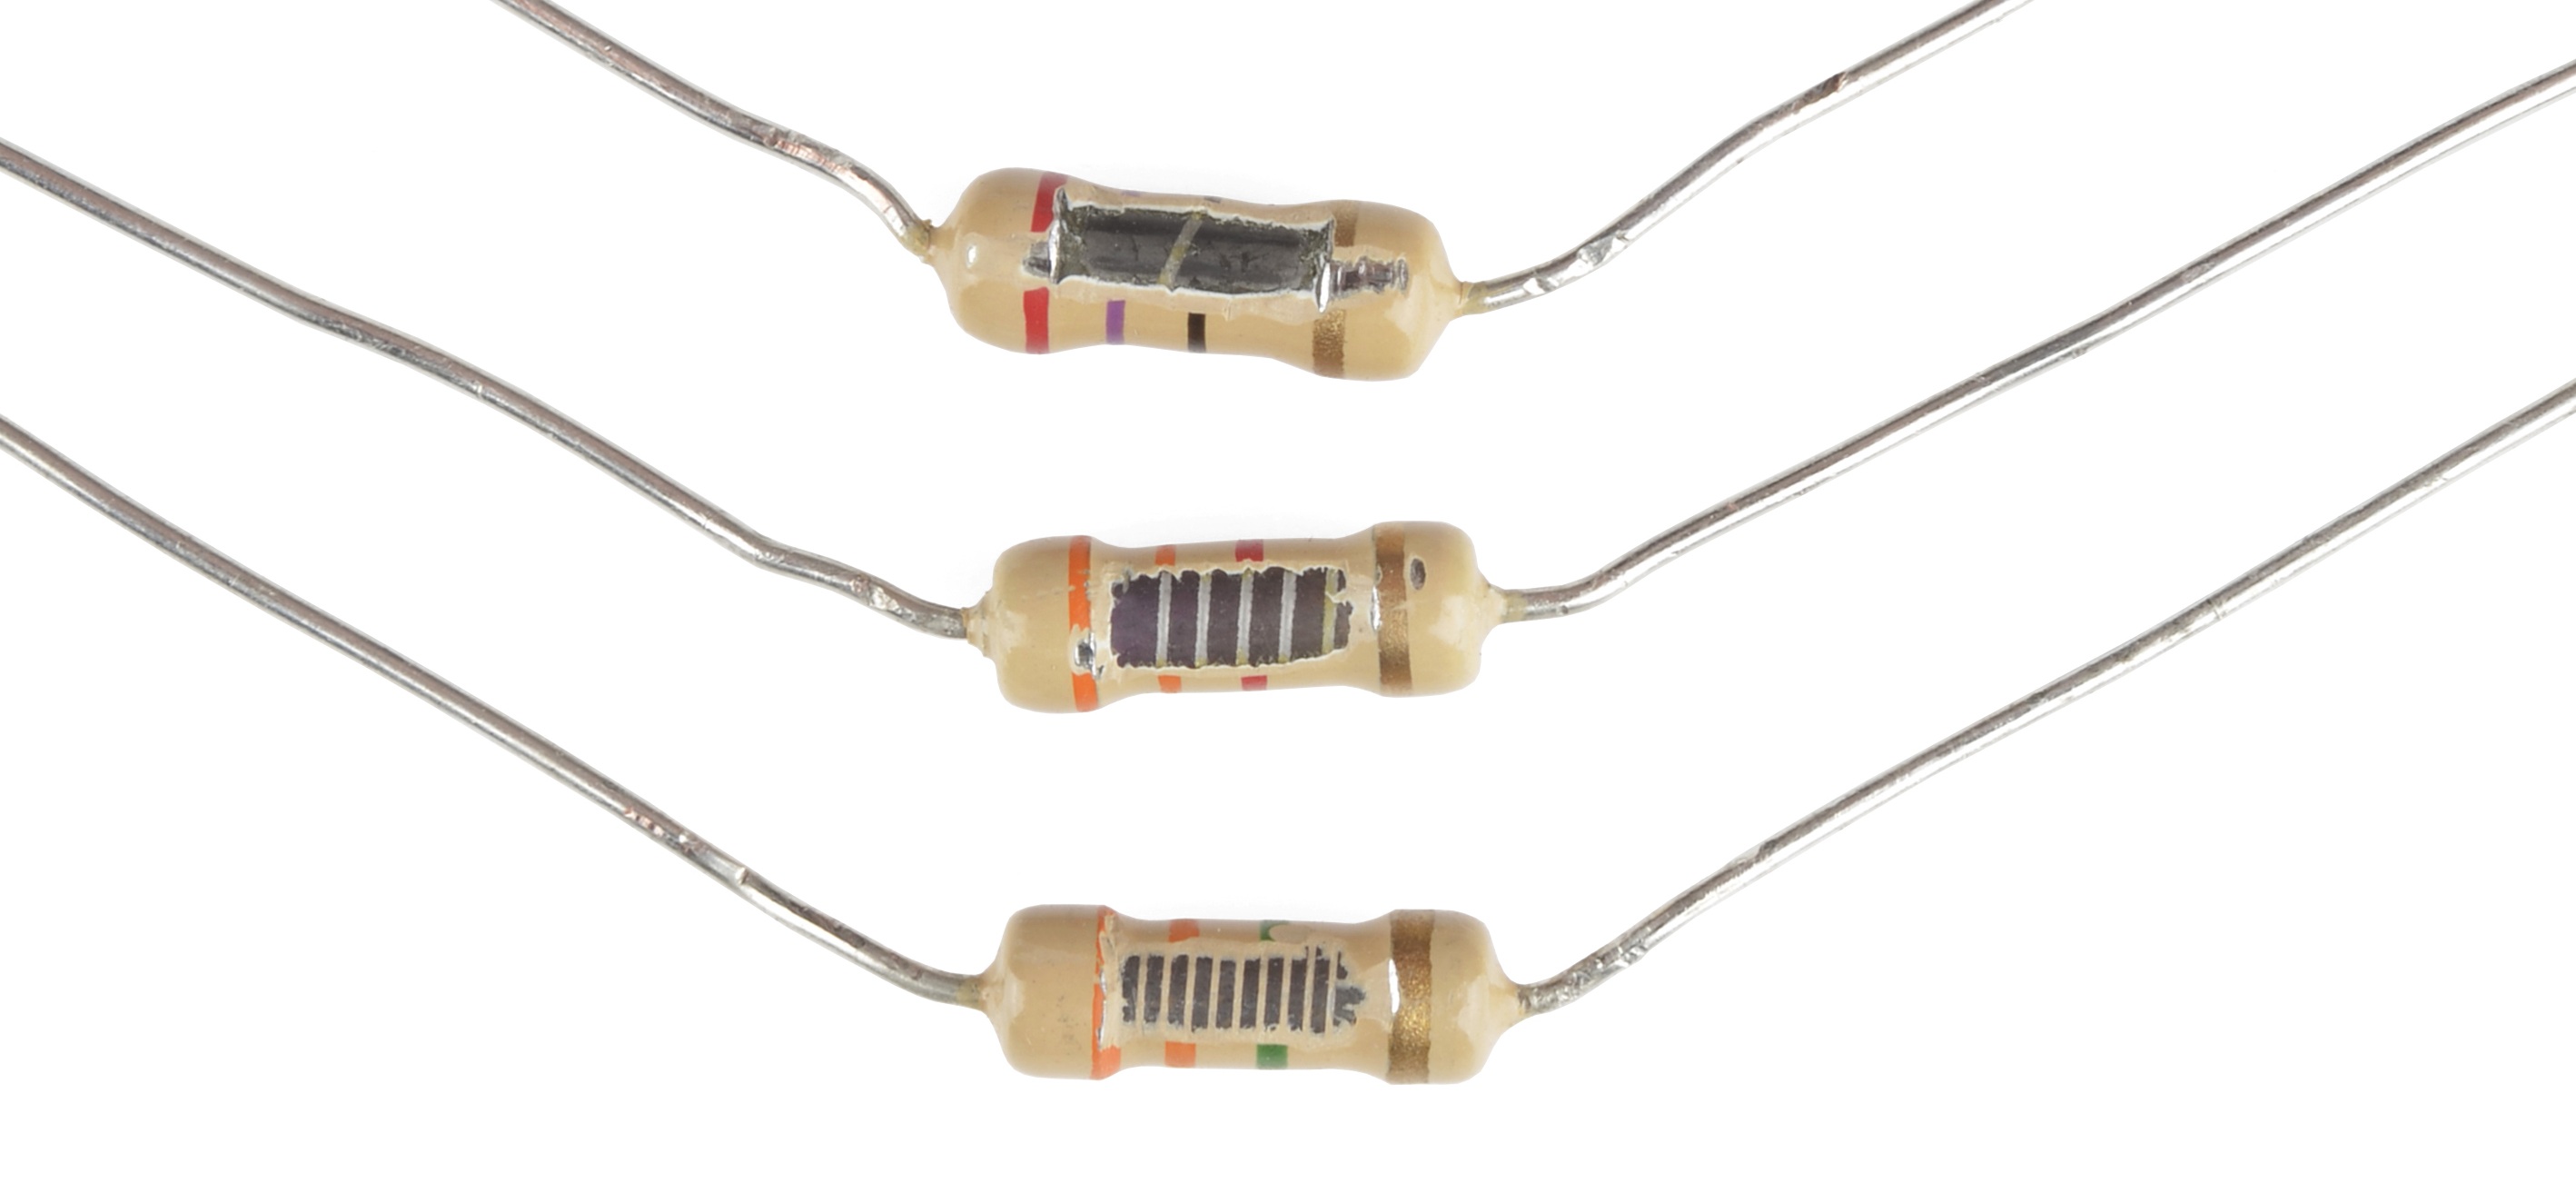 Resistor karbon-film yang dikupas